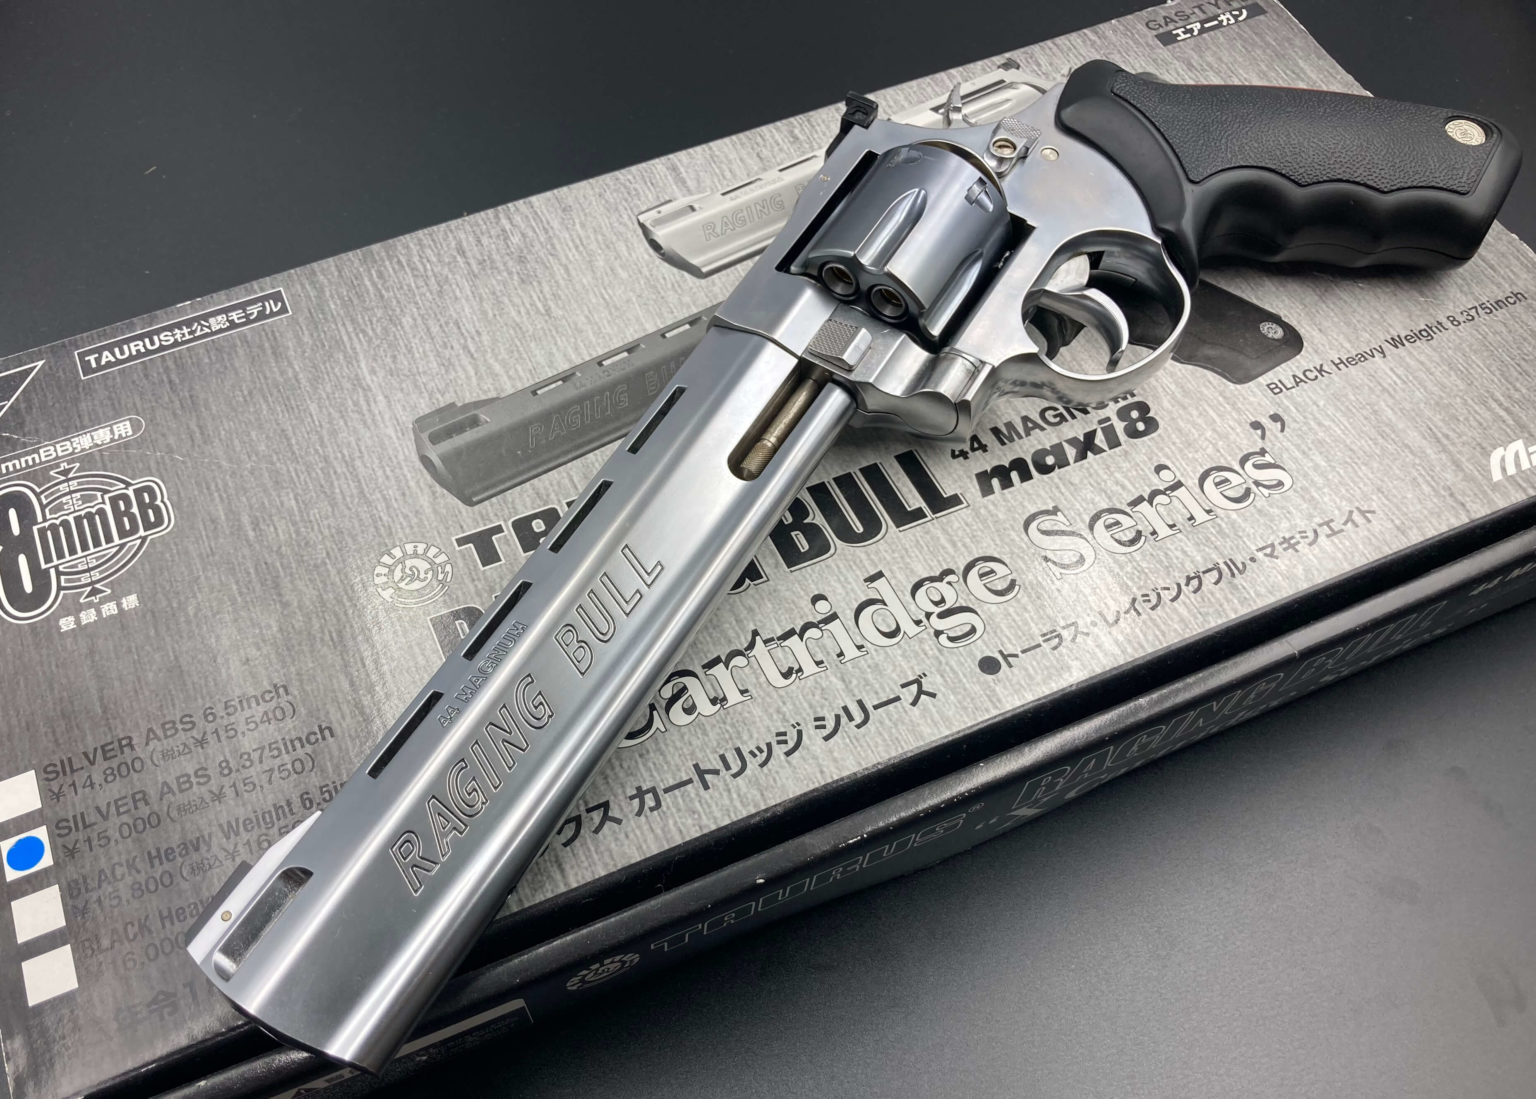 マルシン トーラスレイジングブル 6mm 8.375インチ - ミリタリー